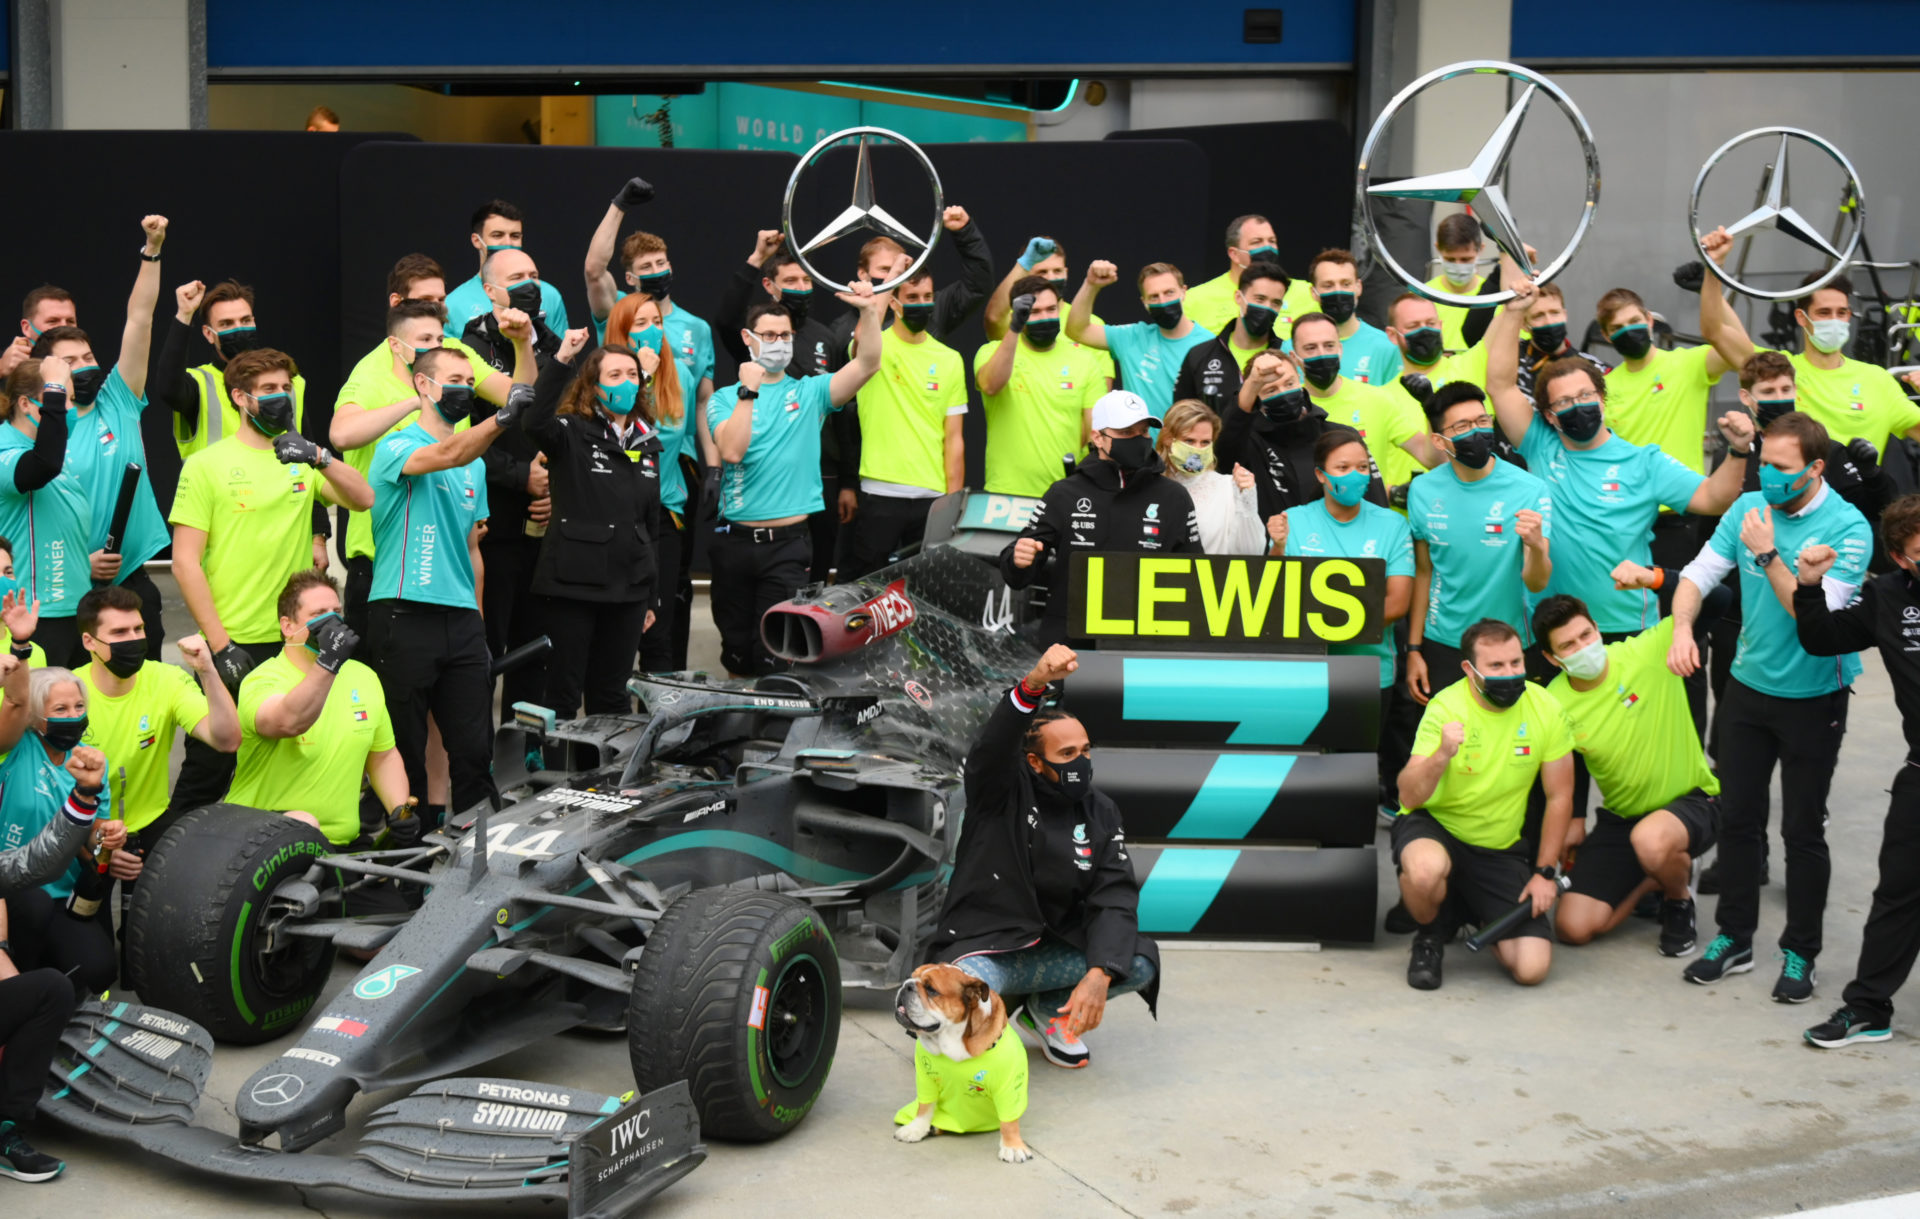 Lewis Hamilton célèbre sa victoire au championnat avec l'équipe Mercedes